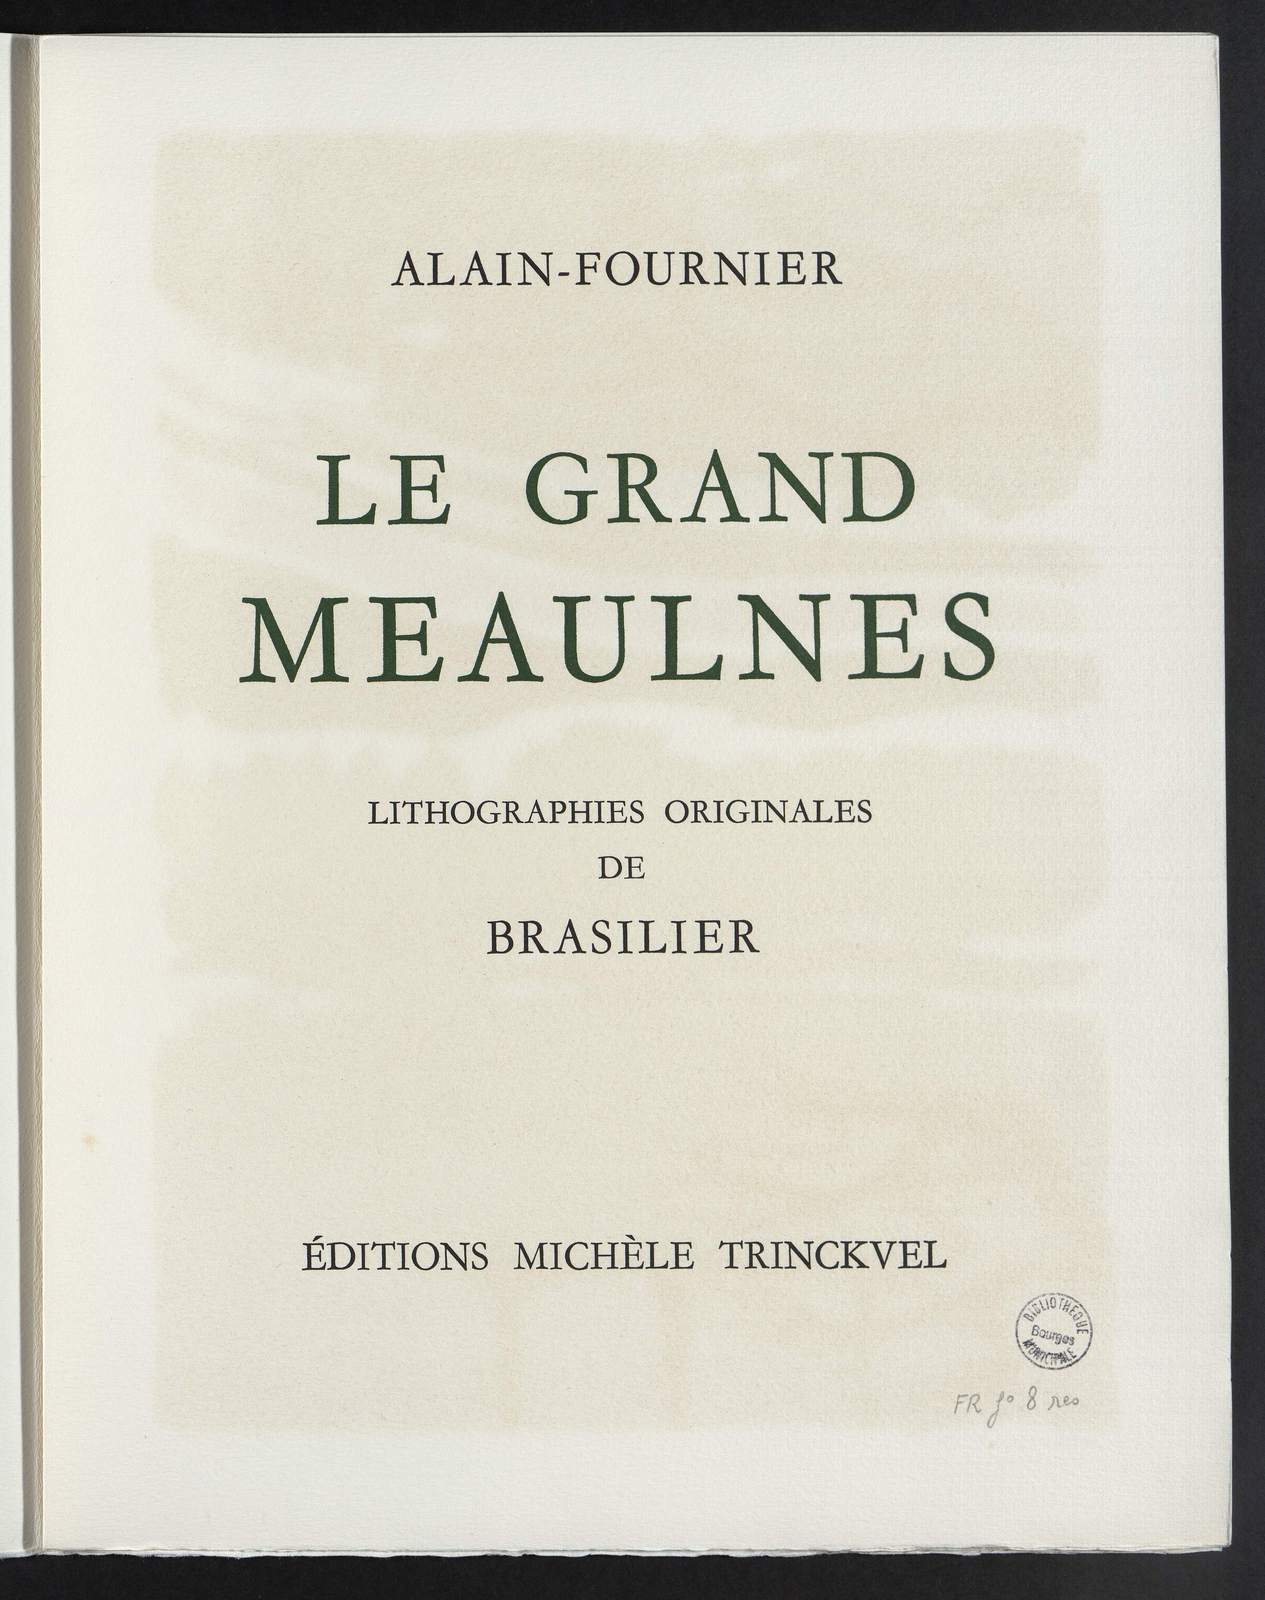 Le Grand Meaulnes, illustré par André Brasilier, Michèle Trinckvel, 1981